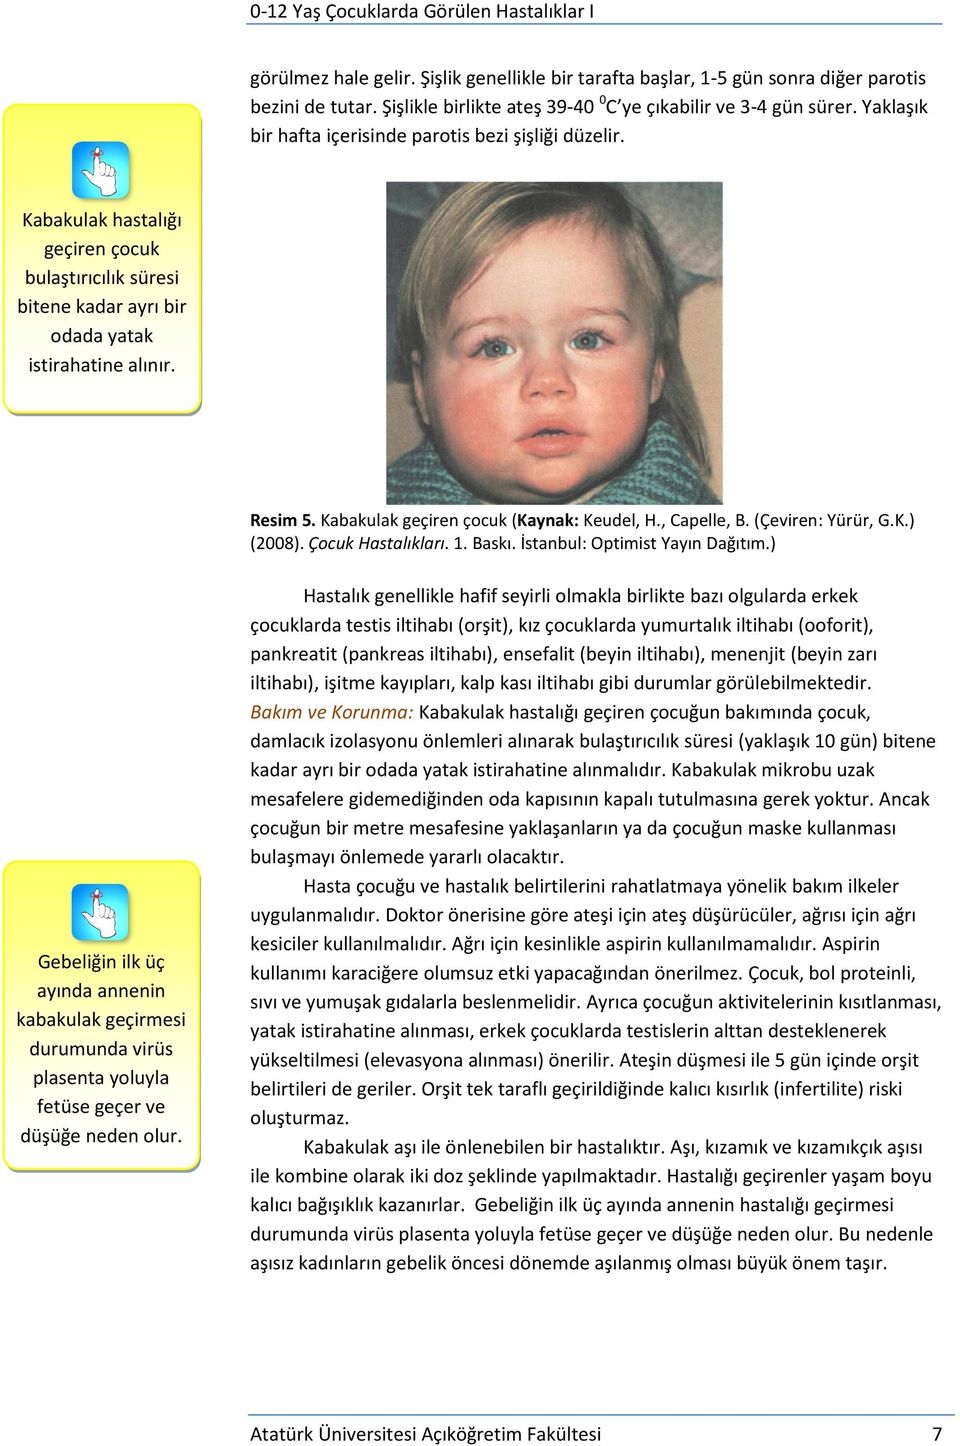 Kabakulak geçiren çocuk (Kaynak: Keudel, H., Capelle, B. (Çeviren: Yürür, G.K.) (2008). Çocuk Hastalıkları. 1. Baskı. İstanbul: Optimist Yayın Dağıtım.